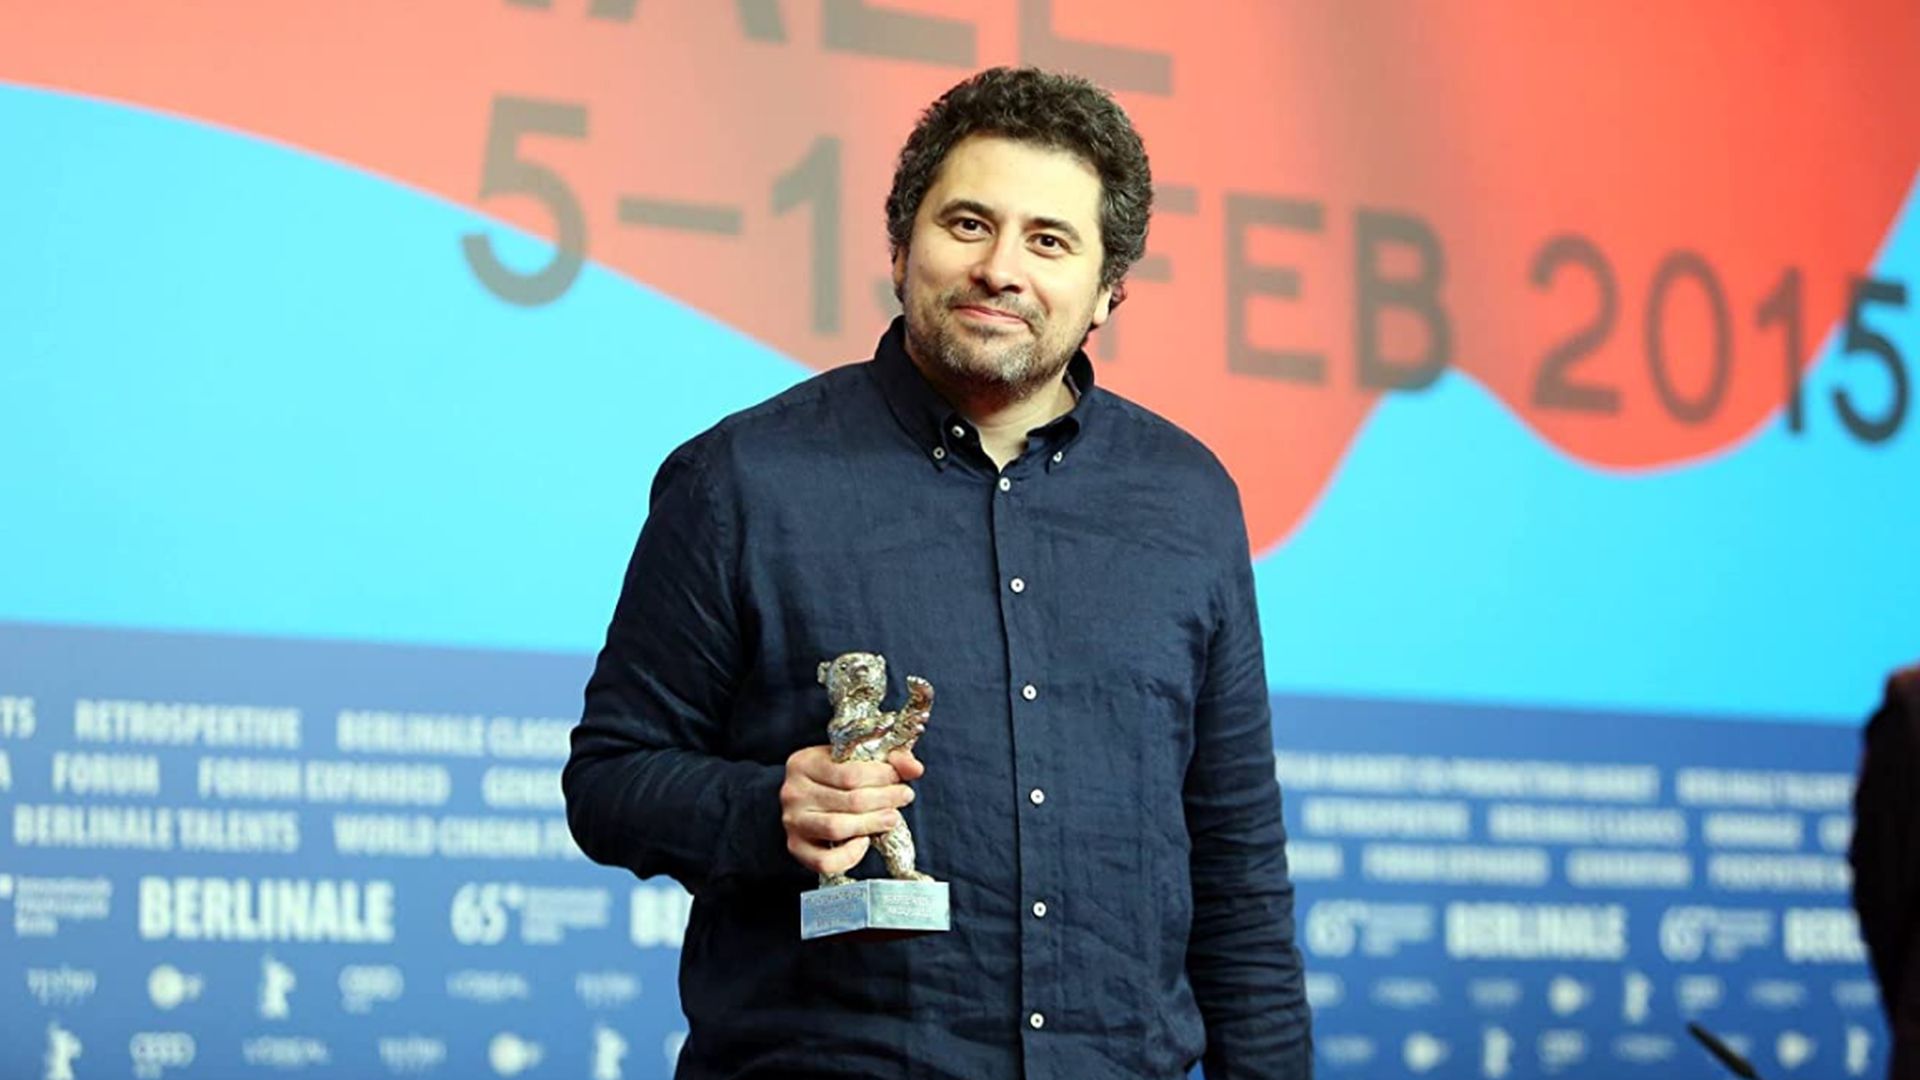 Román rendező a nemsokára kezdődő Berlinale zsűrijében